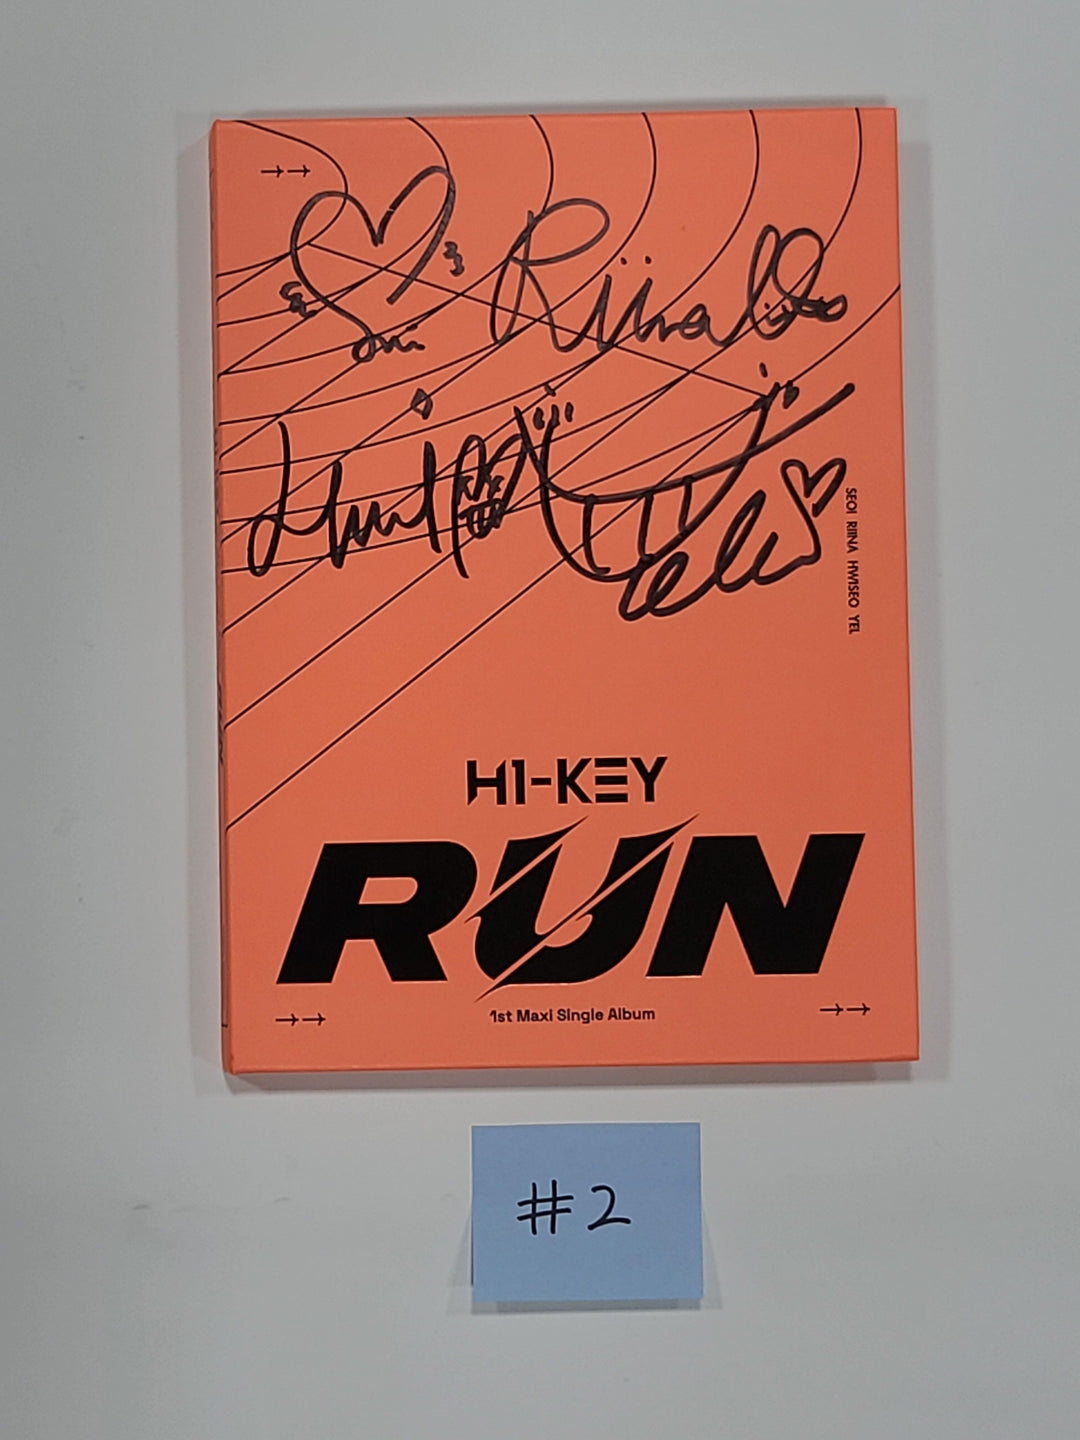 H1-Key - 1st Maxi Single「RUN」 - 直筆サイン入りプロモアルバム